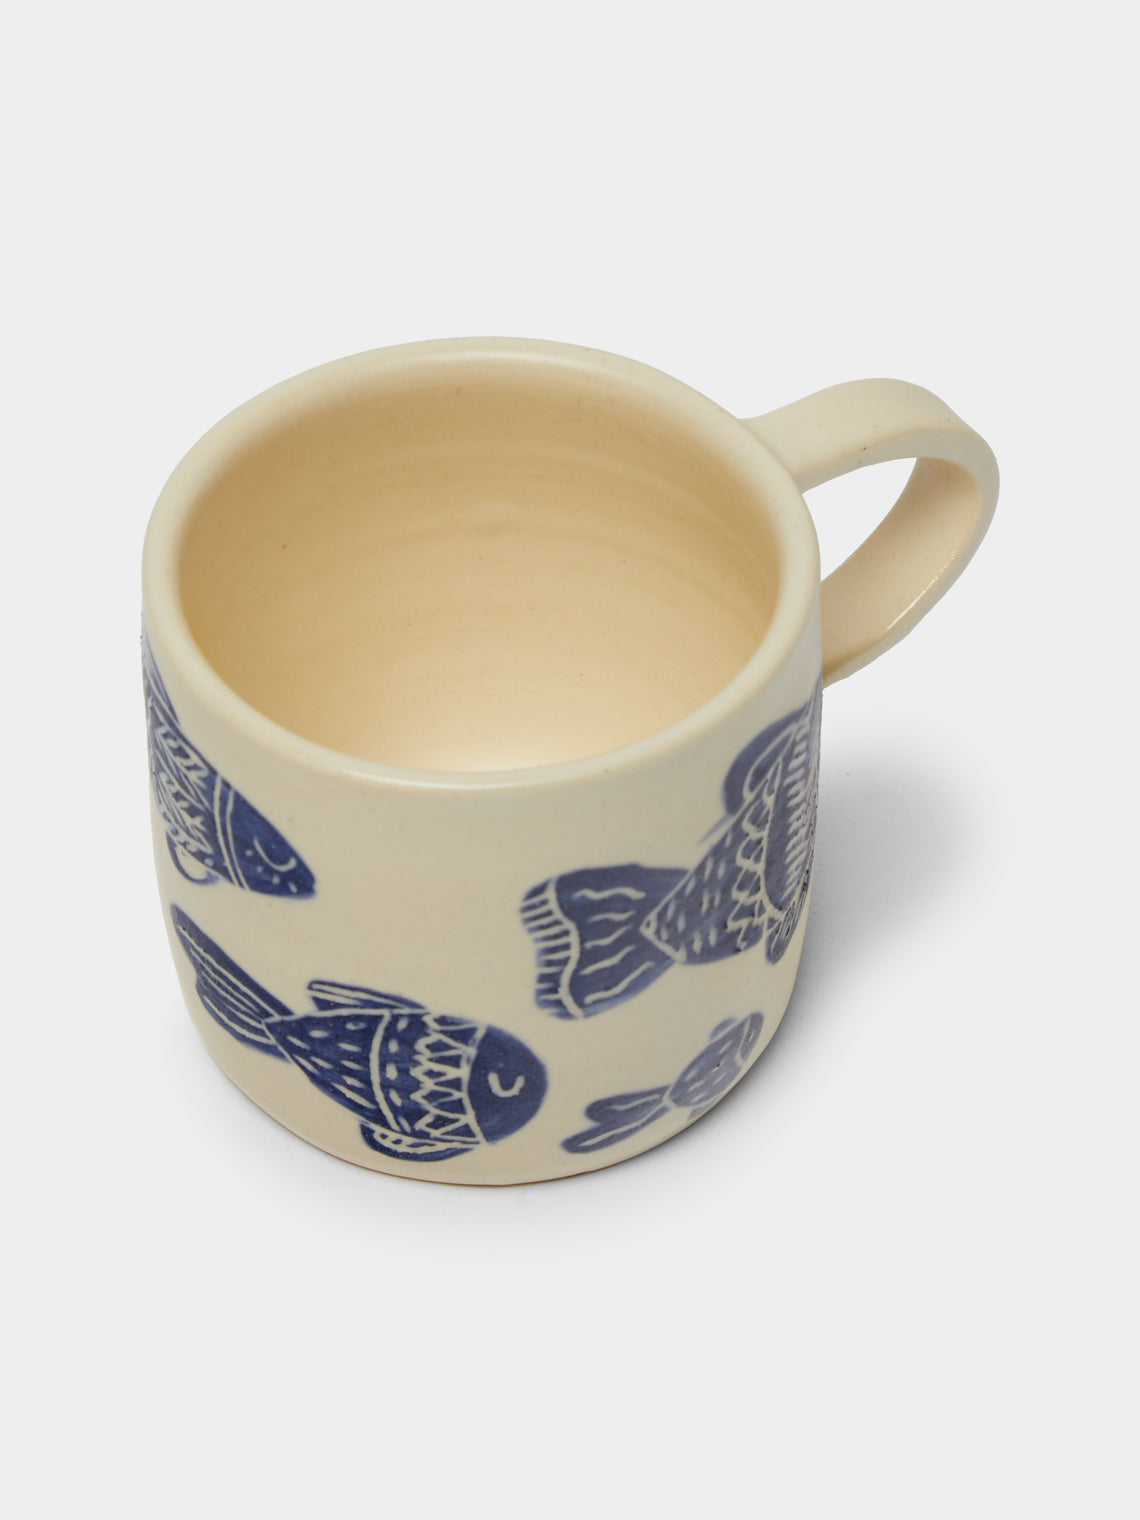 Azul Patagonia - Fish Hand-Painted Ceramic Mug -  - ABASK